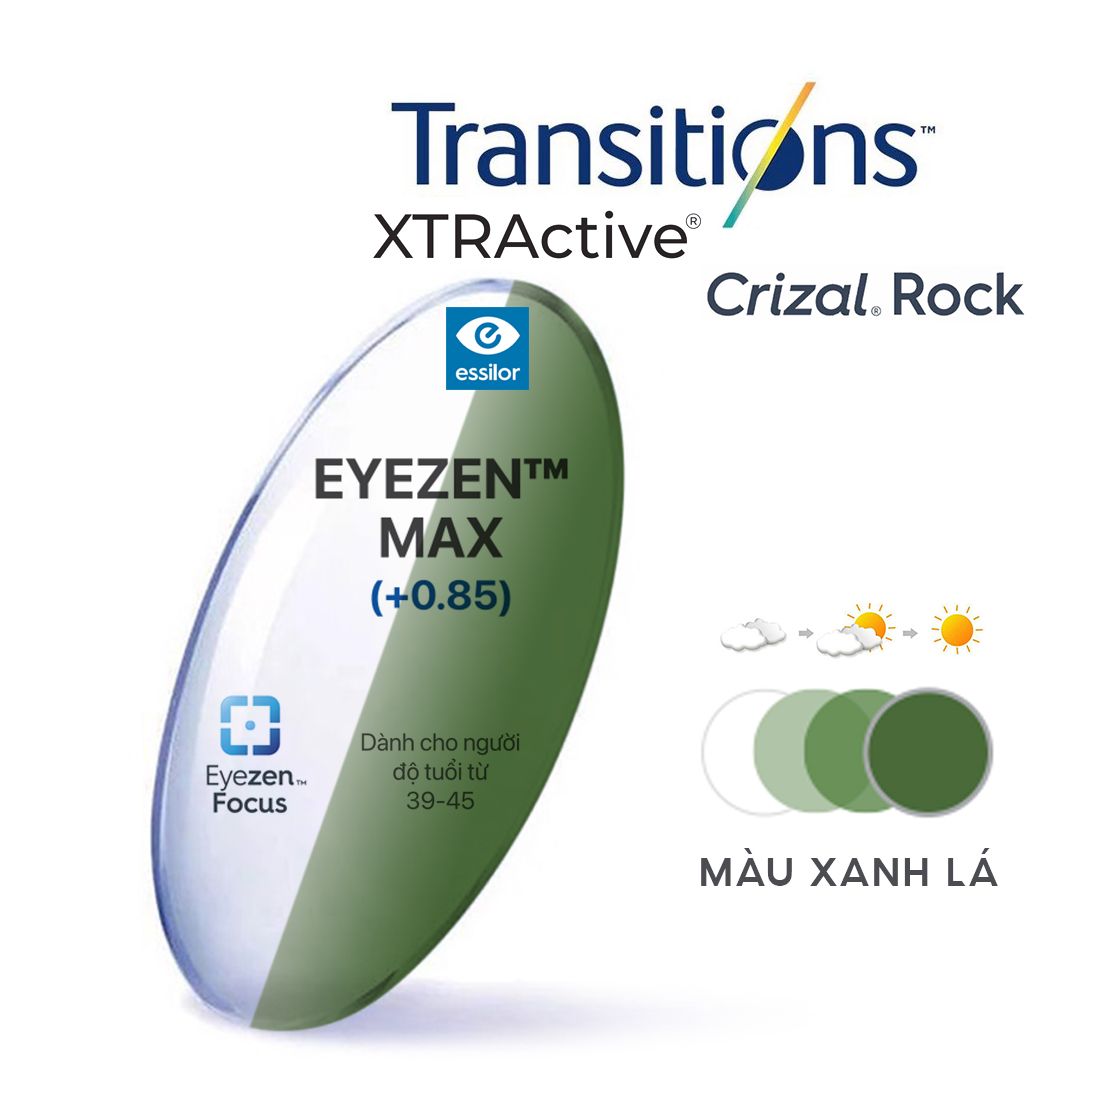  Tròng kính Essilor Eyezen Max Xtractive đổi màu chiết suất 1.67 váng phủ Crizal Rock 